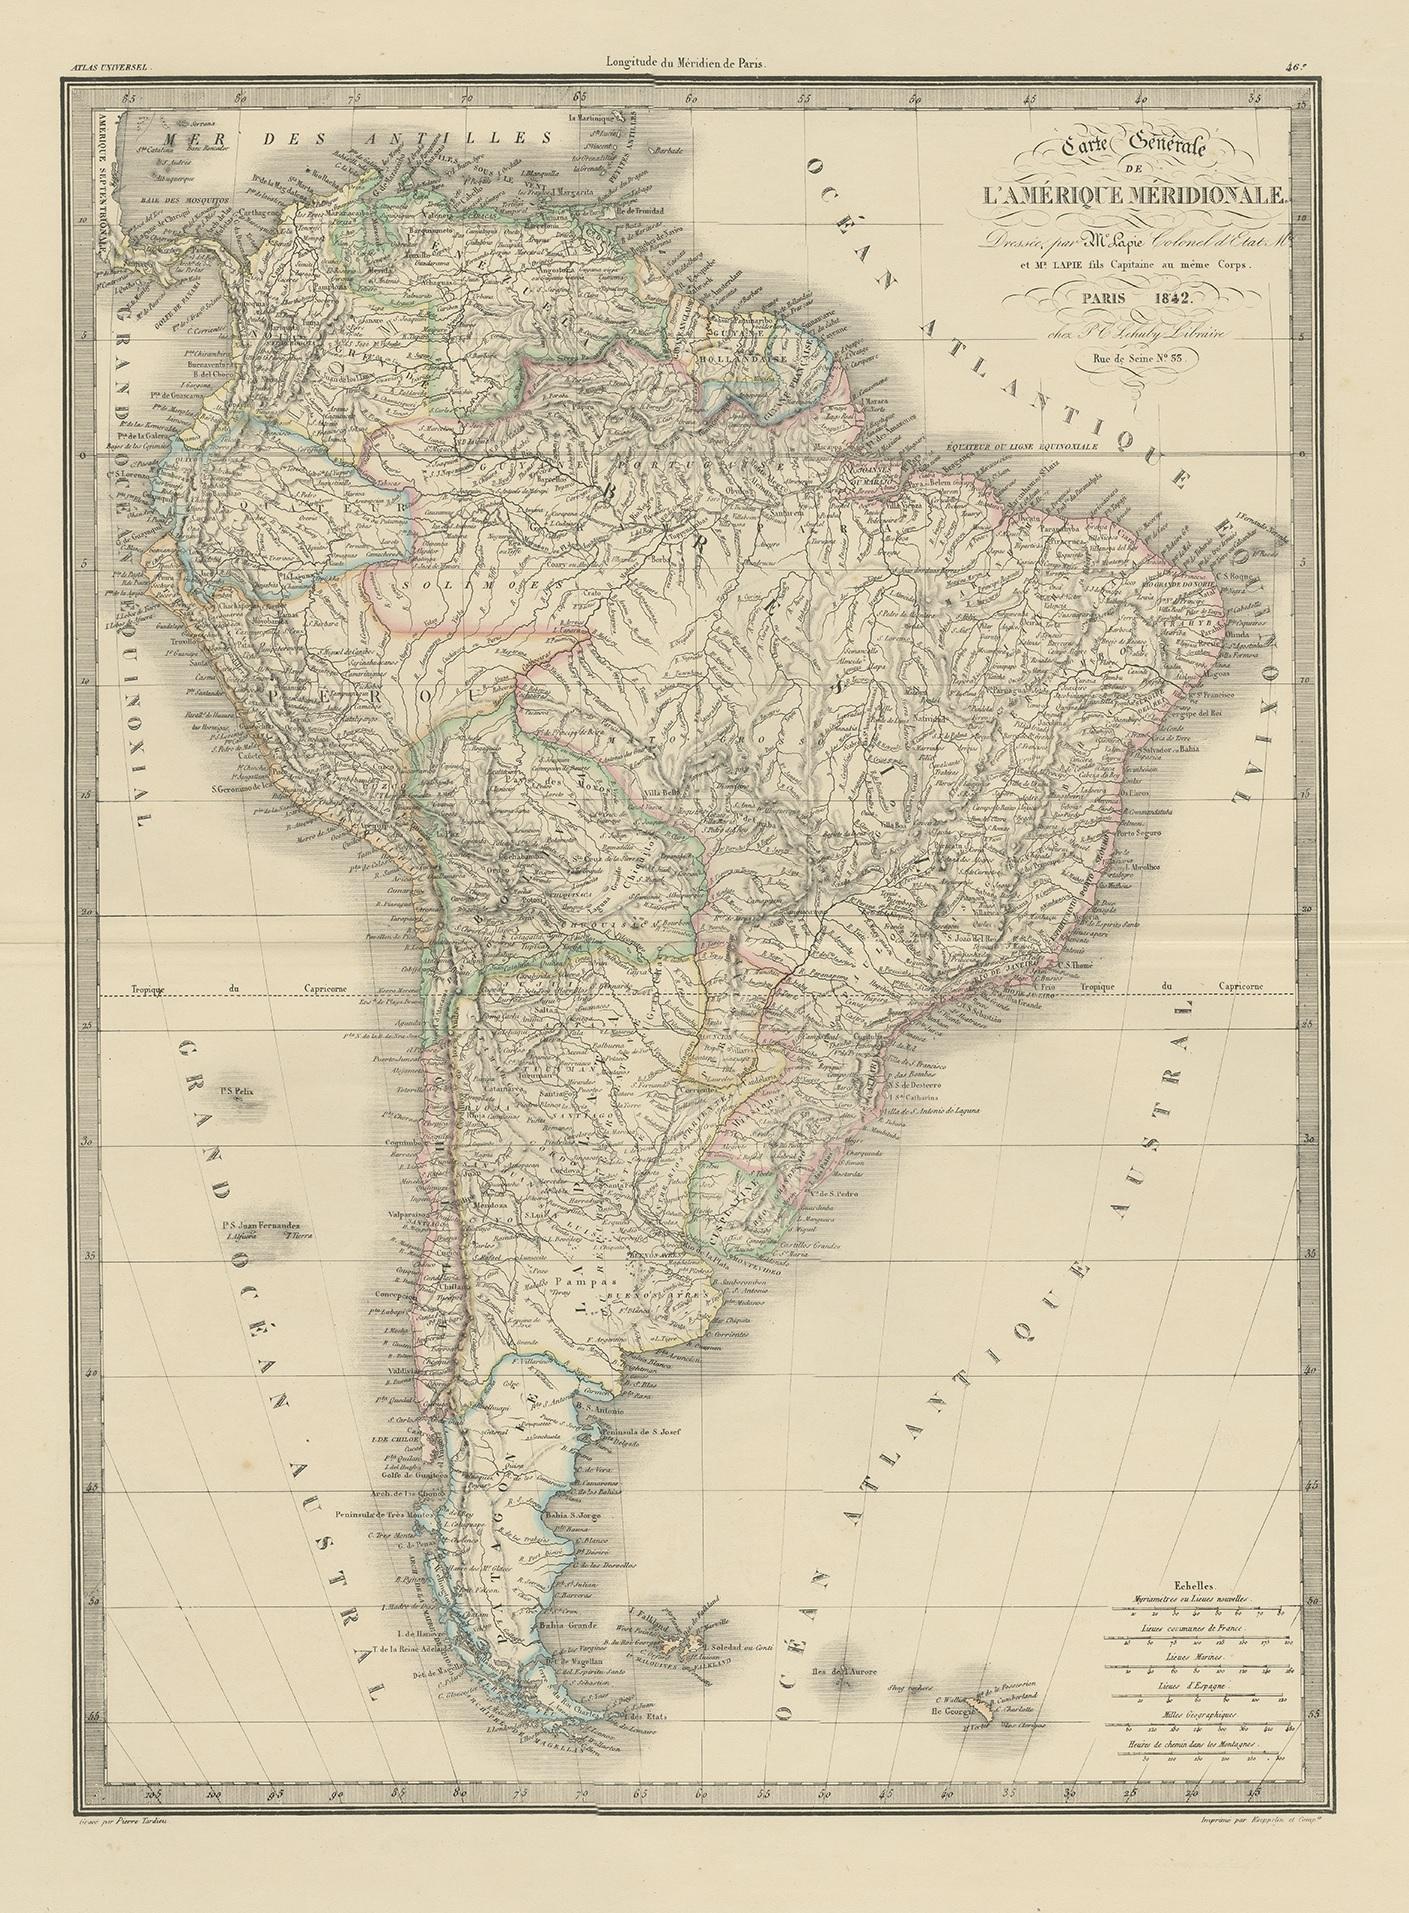 Antique map titled 'Carte Générale de l'Amérique Meridionale'. Map of South America. This map originates from 'Atlas universel de géographie ancienne et moderne (..)' by Pierre M. Lapie and Alexandre E. Lapie. Pierre M. Lapie was a French